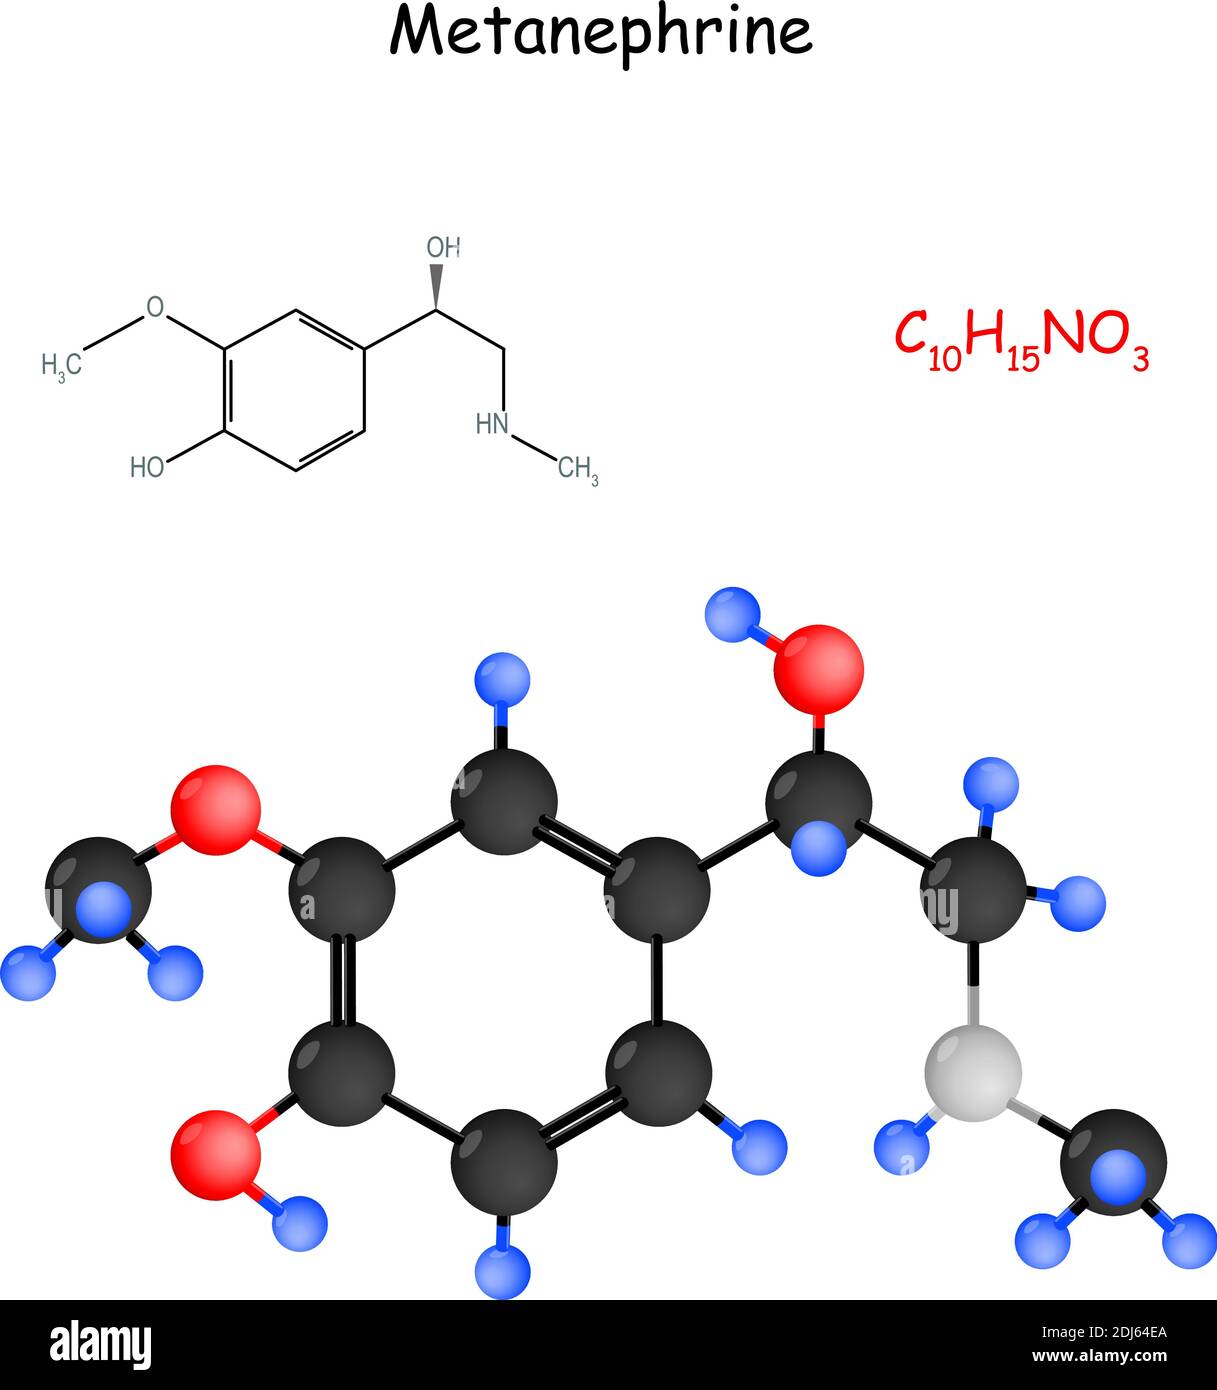 La métanephrine est un métabolite de l'épinéphrine (adrénaline). Formule structurale chimique et modèle de molécule Illustration de Vecteur